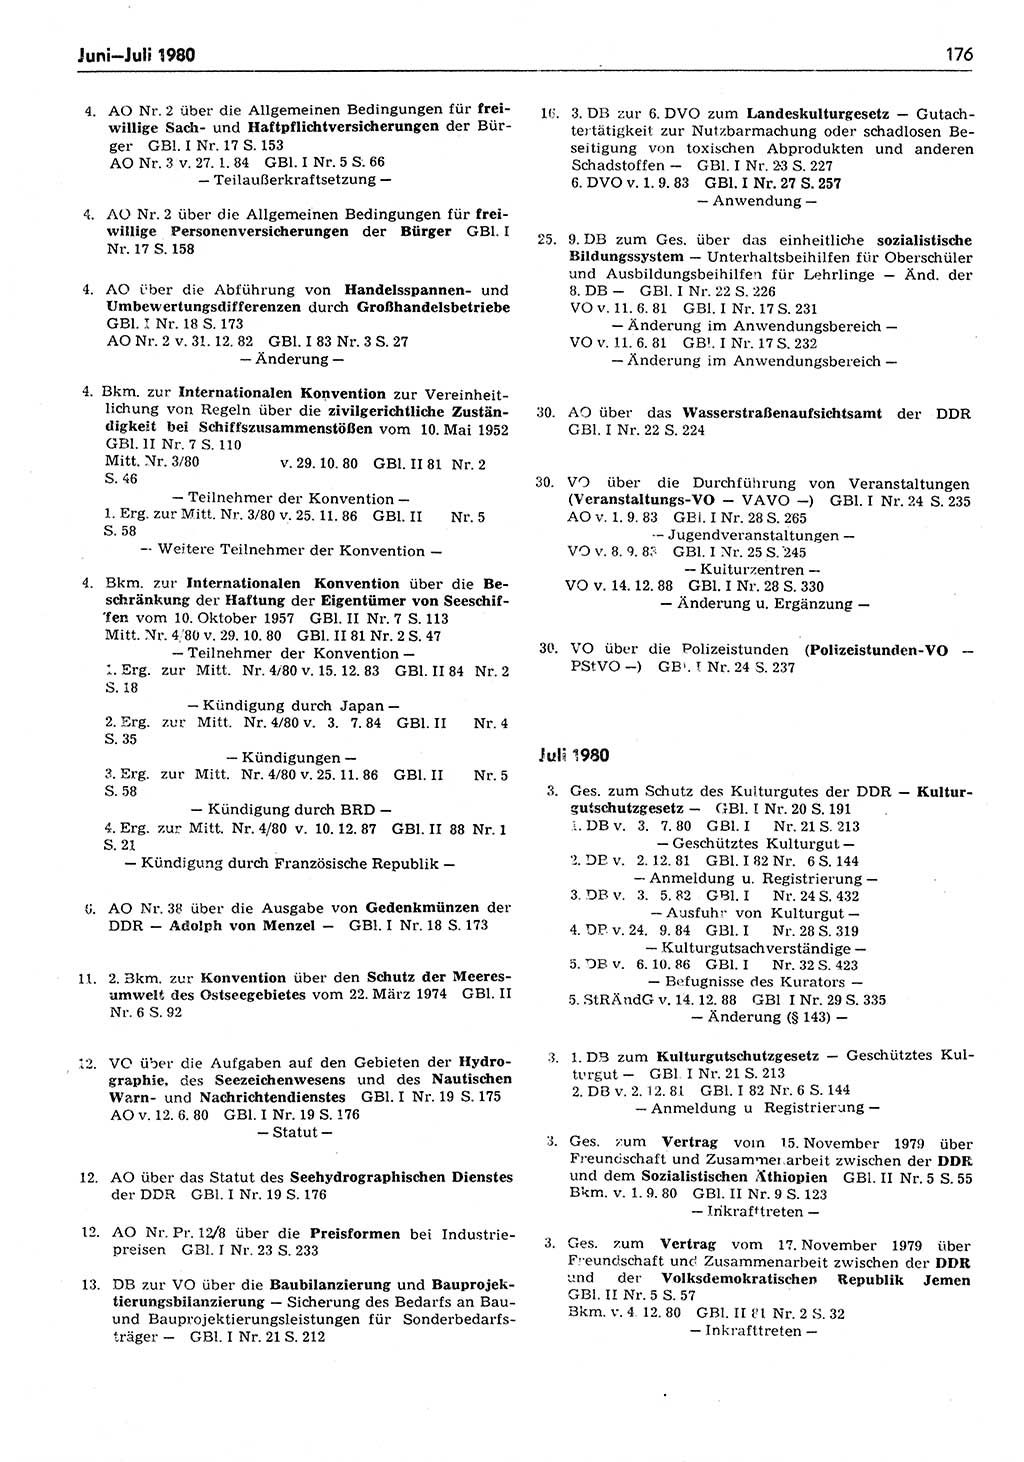 Das geltende Recht der Deutschen Demokratischen Republik (DDR) 1949-1988, Seite 176 (Gelt. R. DDR 1949-1988, S. 176)